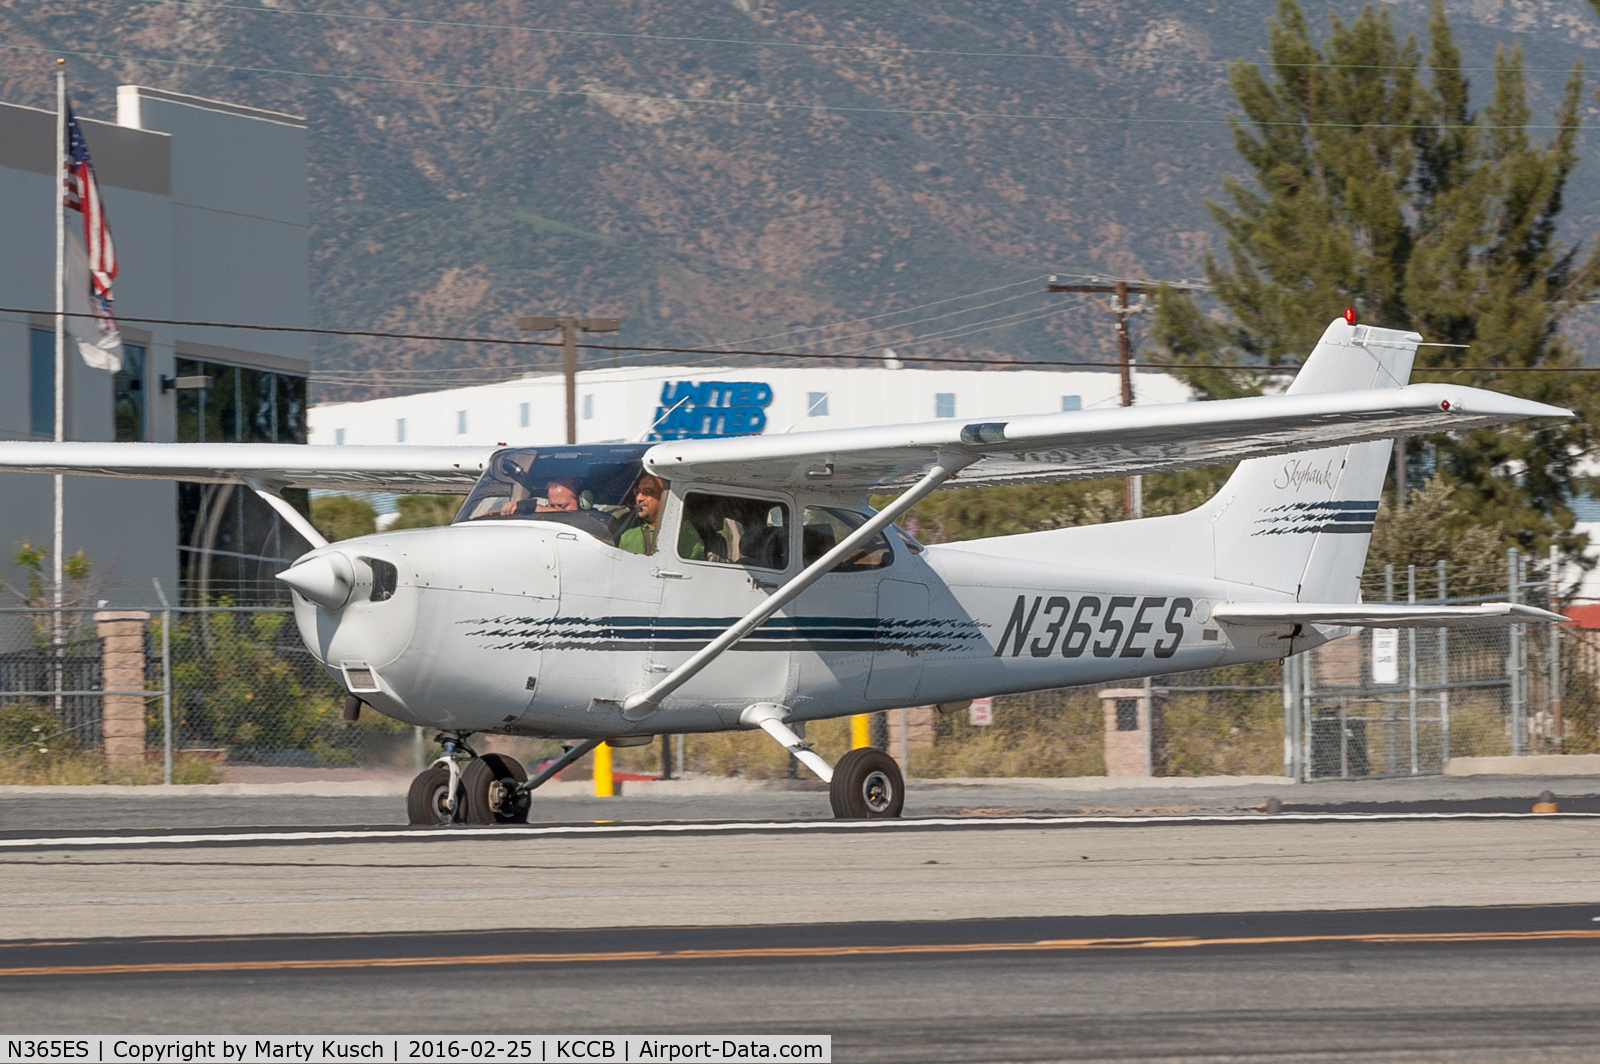 N365ES, 1997 Cessna 172R C/N 17280023, Ready to depart Runway 24.